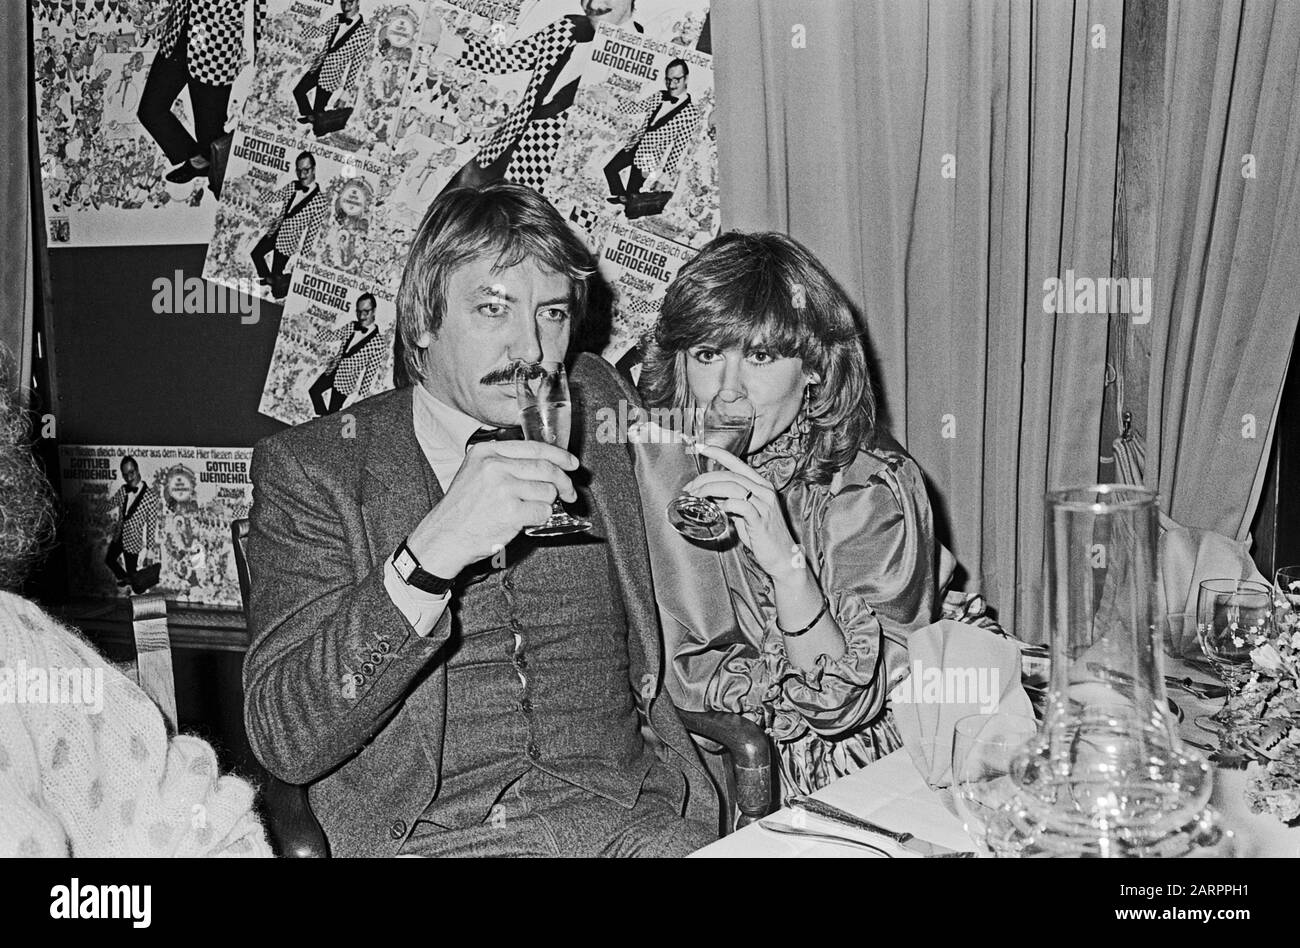 Werner Böhm, deutscher Schlagersänger und Musiker, nimt einen Drink mit Ehefrau Mary Roos, Deutschland 1982. Der deutsche schlagersänger und Musiker Werner Boehm hat mit seiner Frau Mary Roos, Deutschland 1982, einen Drink. Stockfoto